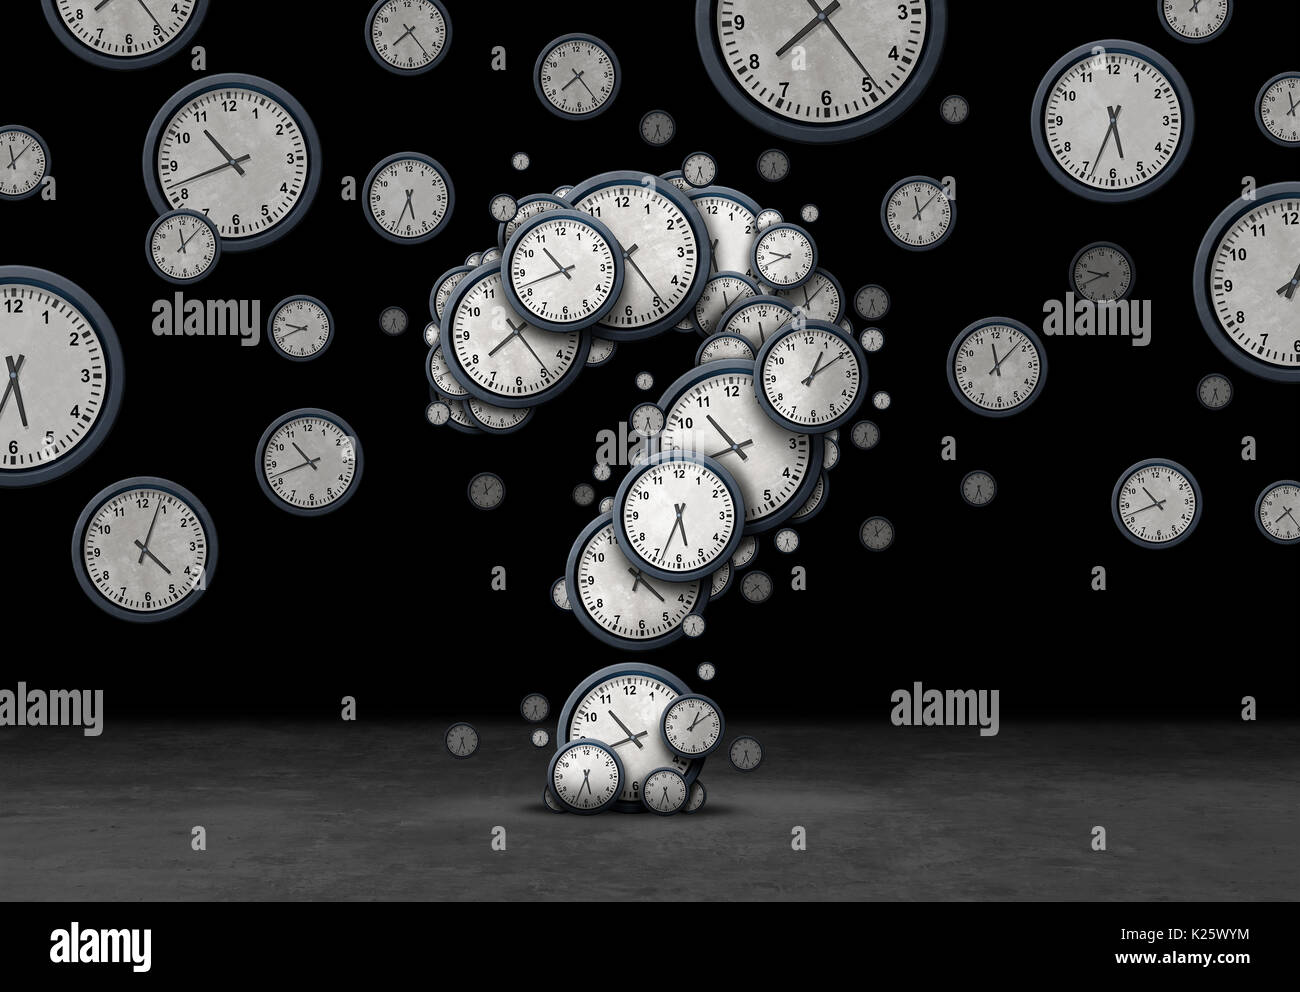 Fragen Zeit Konzept, wie eine Gruppe von schwimmenden Uhren und Uhren als Fragezeichen als Metapher für Termin- oder Business geprägt. Stockfoto